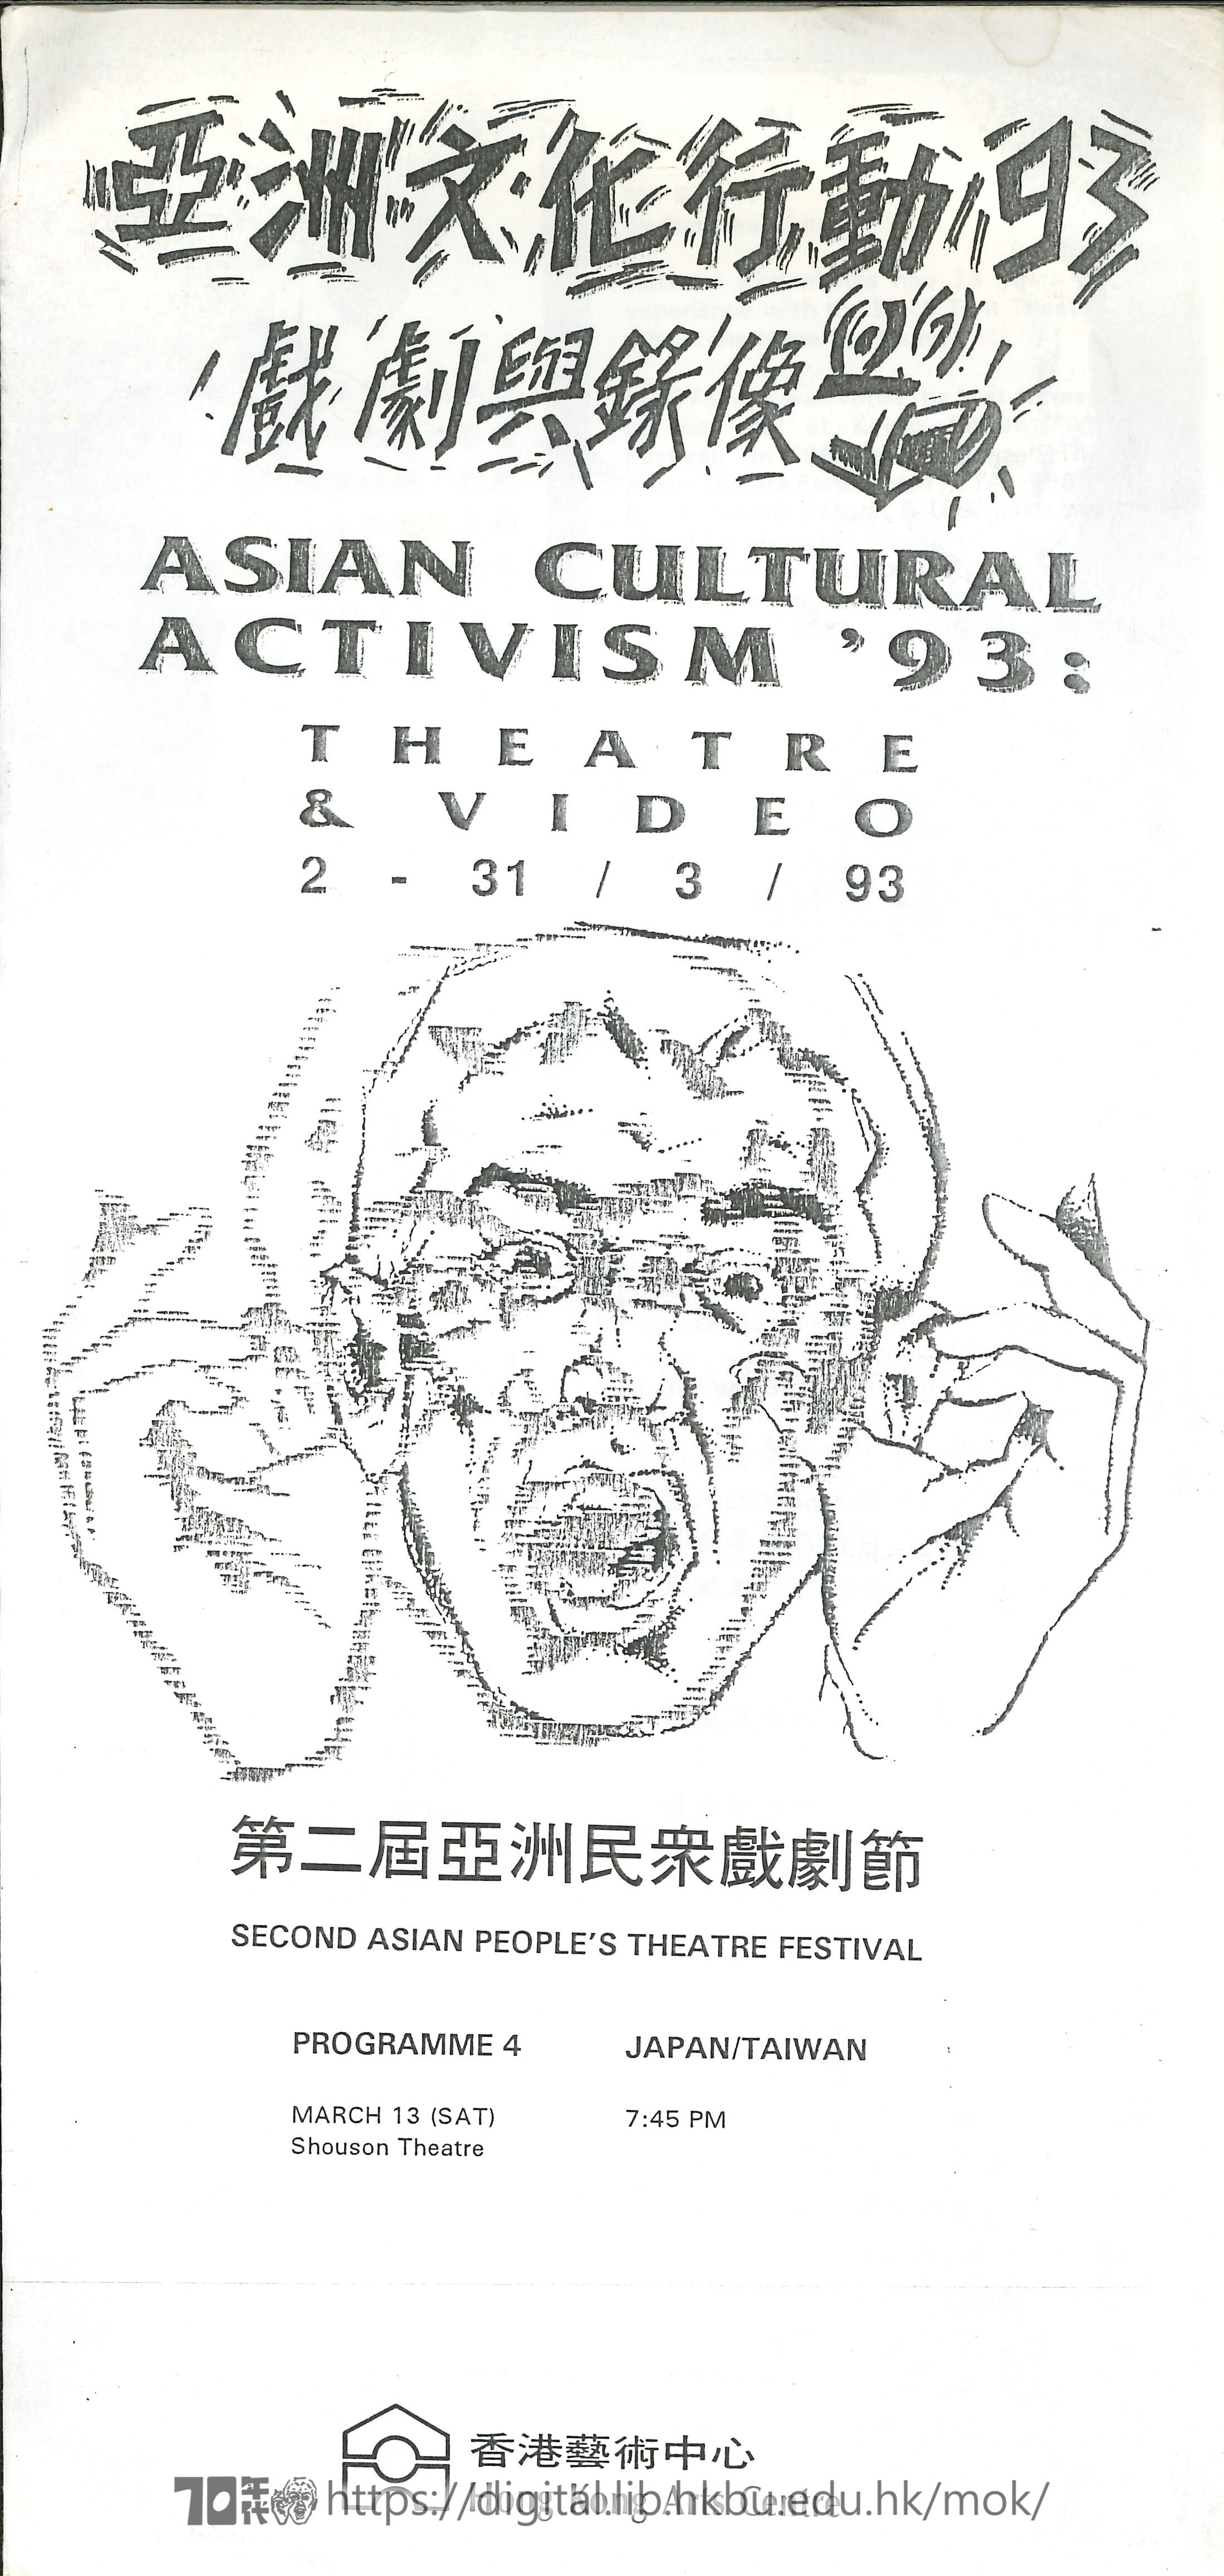 第二屆亞洲民眾戲劇節  亞洲文化行動93 戲劇與錄像 (節目-4）第二届亞洲民衆戲劇節 場刊  